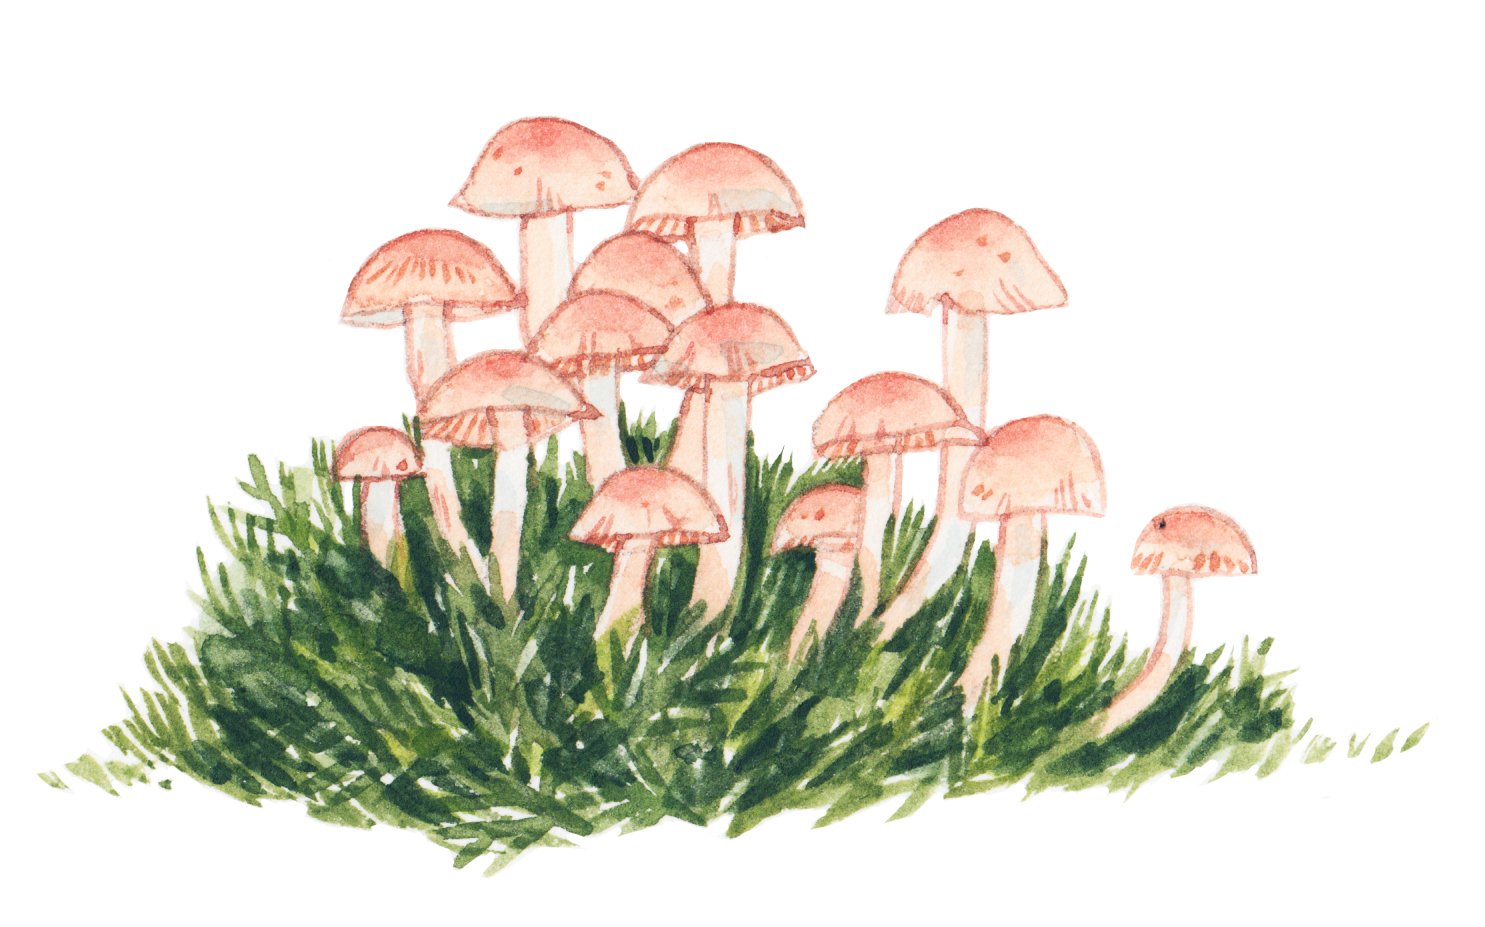 Justine-Wong-Illustration-Food-Mushrooms.jpg